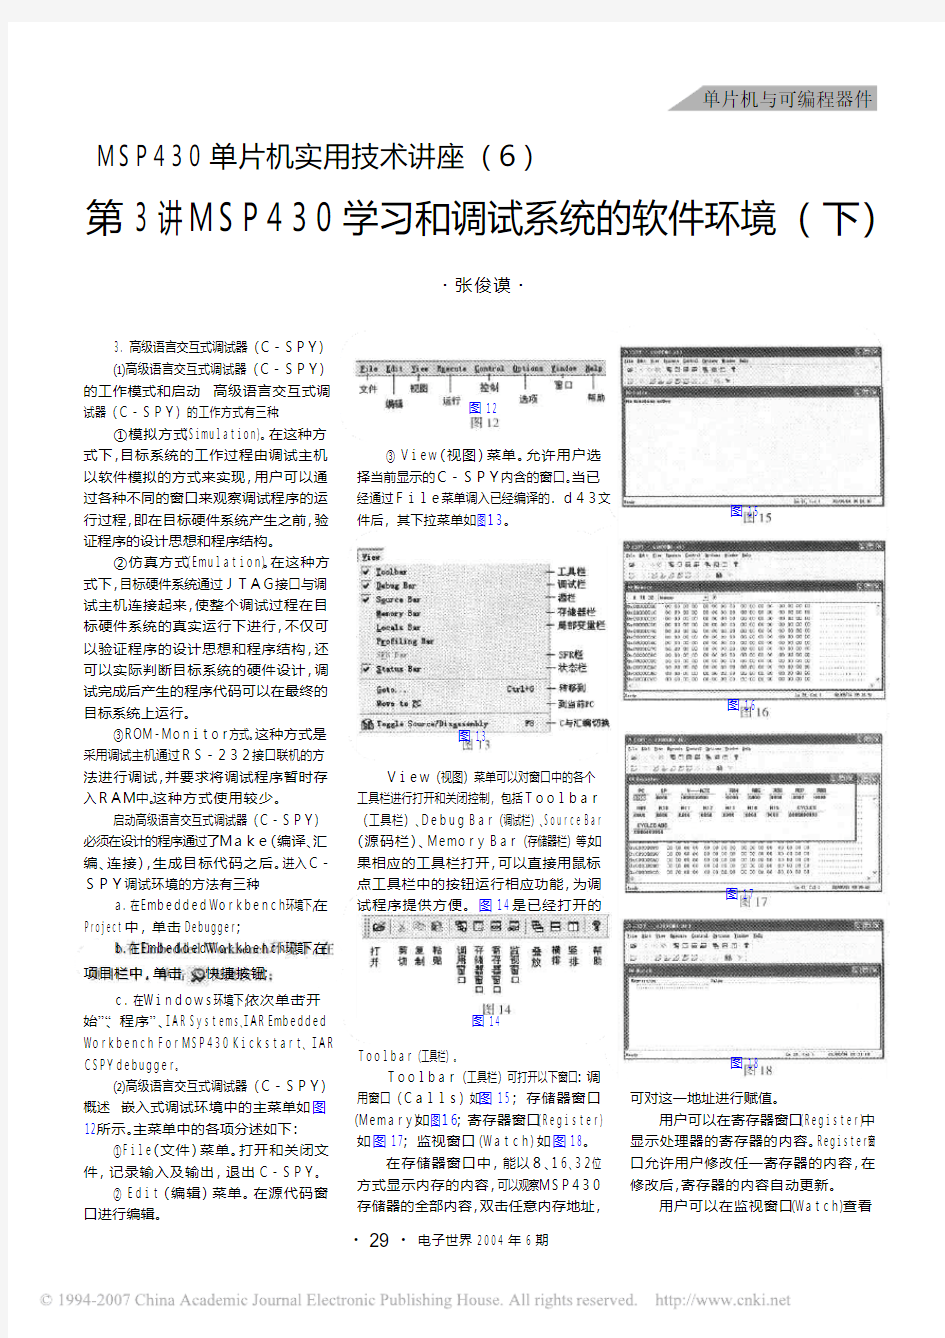 MSP430单片机实用技术讲座(6) 第3讲MSP430学习和调试系统的软件环境(下)